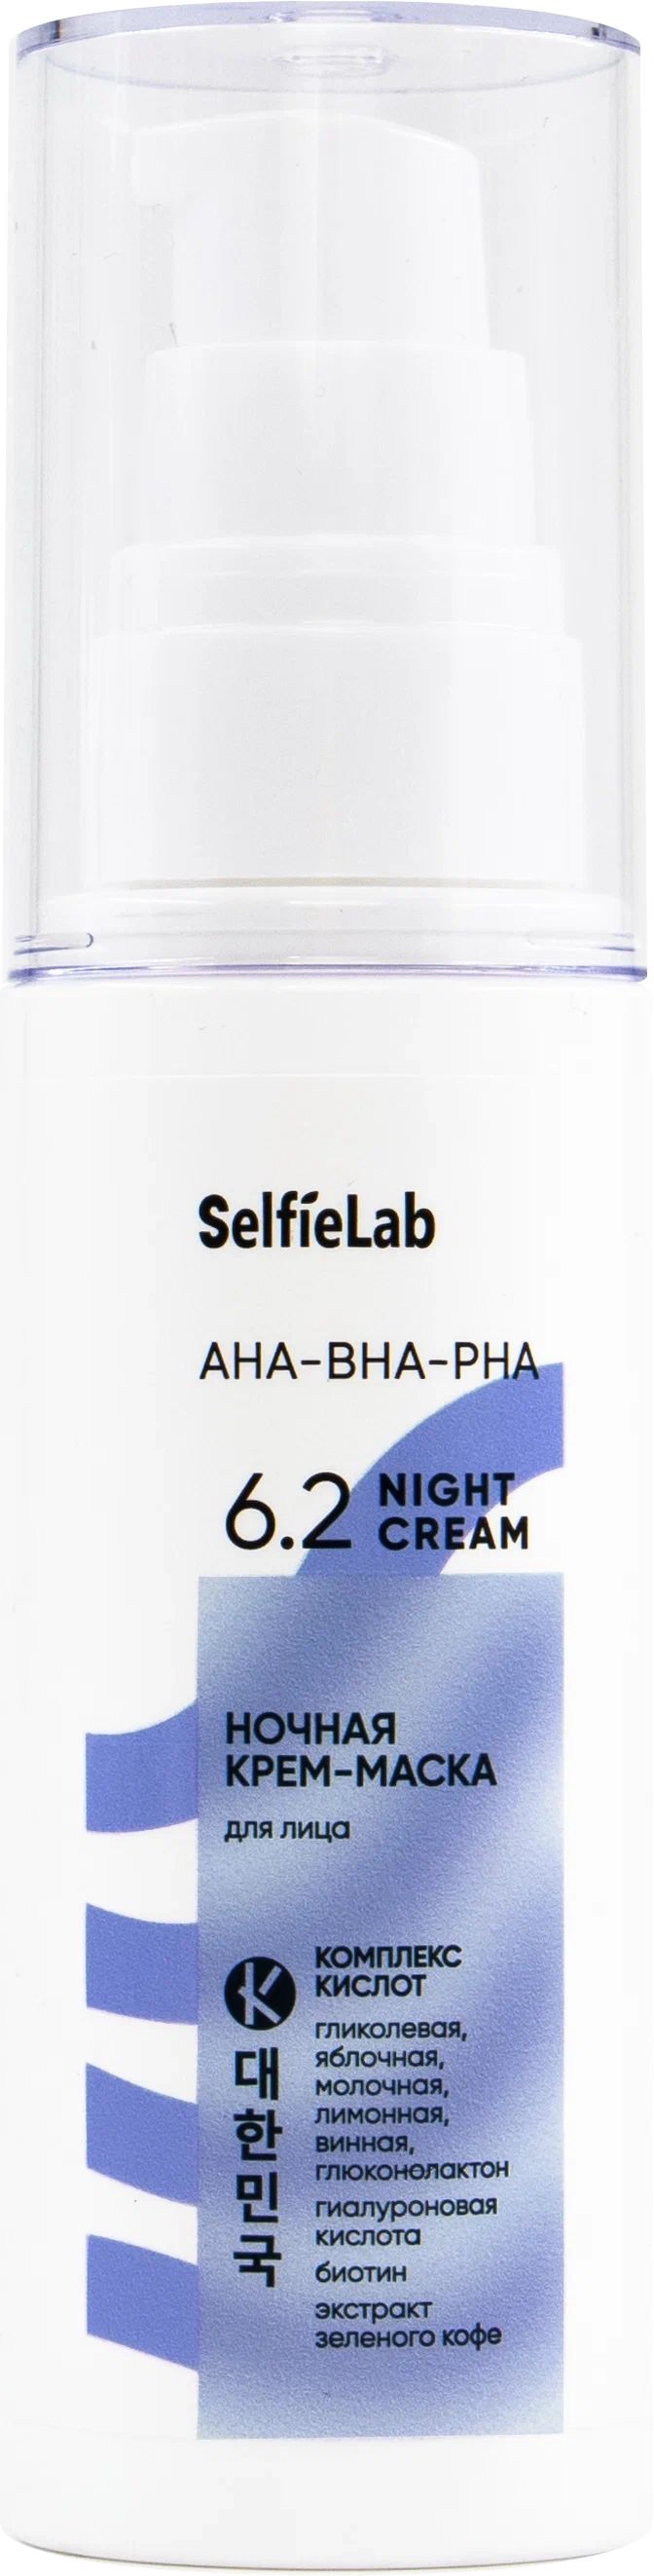 Маска-крем для лица SelfieLab AHA-BHA-PHA ночная 50 г маска ультраблеск coffee premium ultra shine mask шаг 3 ht 203 150 мл